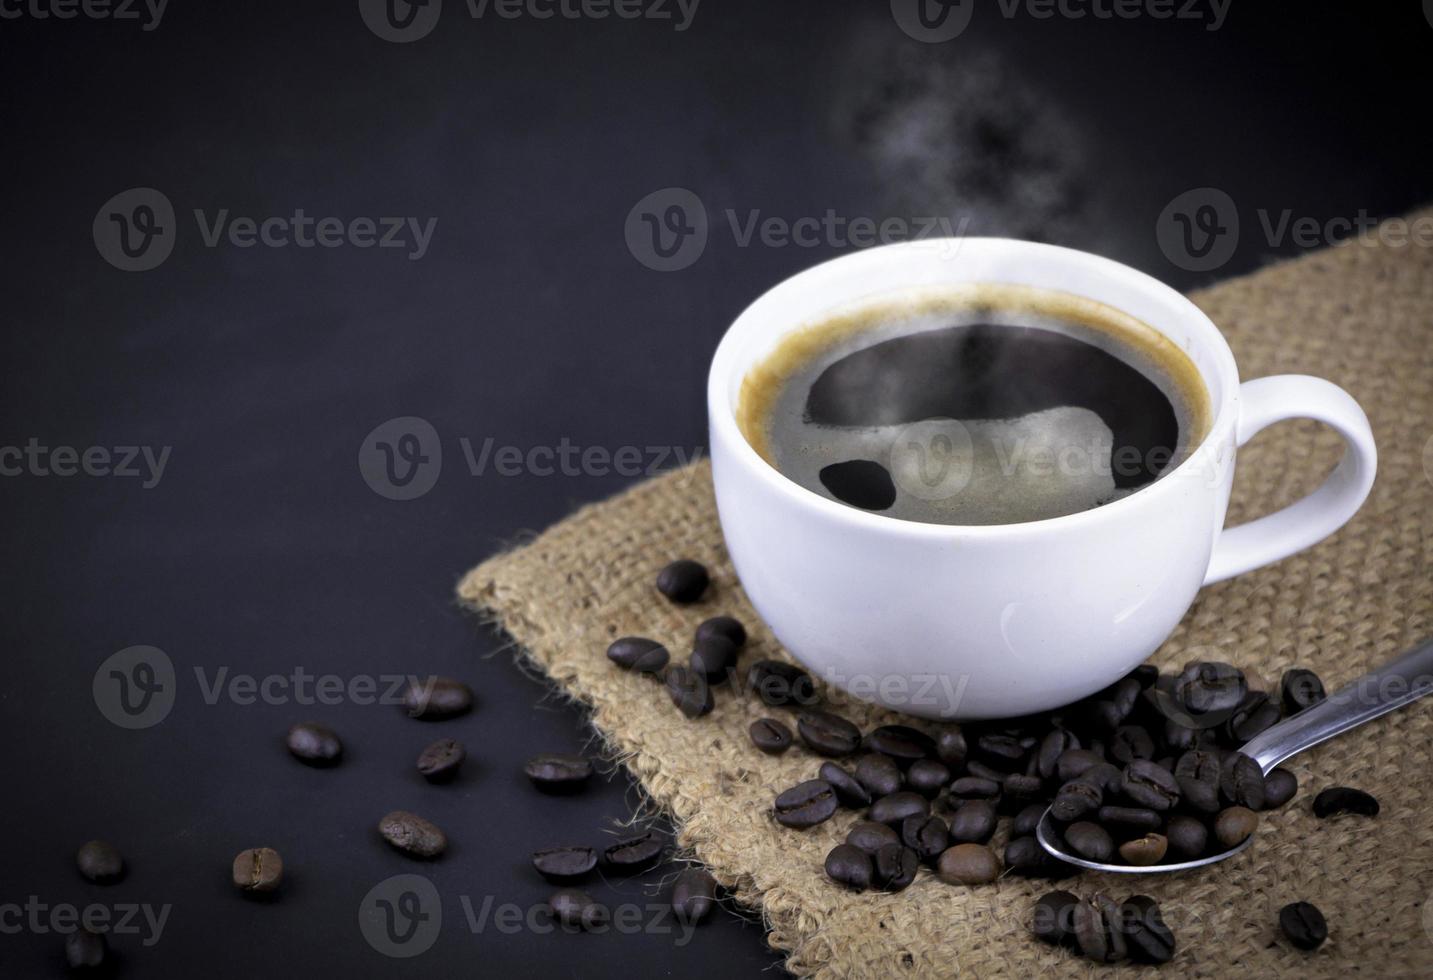 vue en grand angle d'une tasse en céramique blanche de café americano chaud noir avec de la vapeur sur un sac avec un tas de grains de café torréfiés sur fond noir. photo